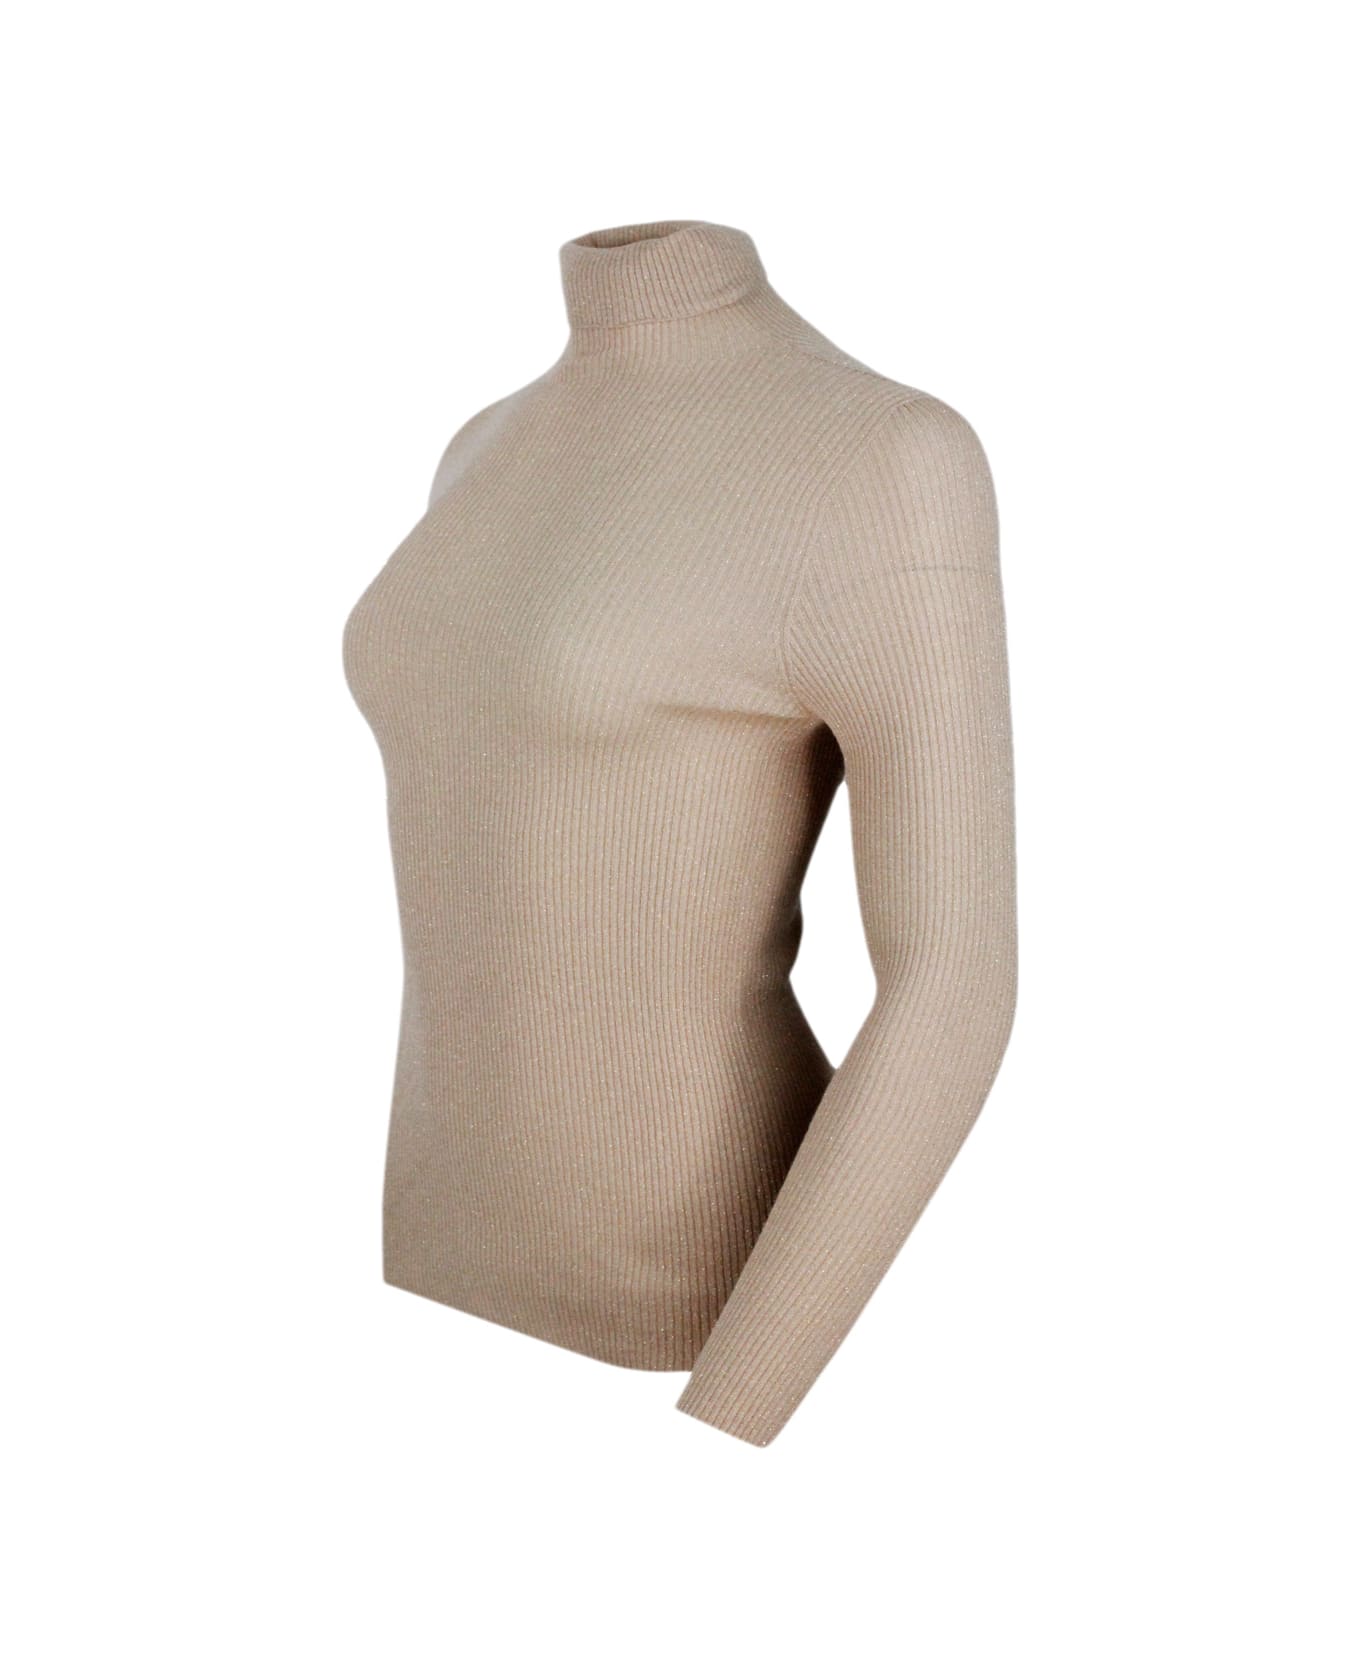 Fabiana Filippi Long-sleeved Turtleneck Sweater In Merino Lamè Embellished With Shiny Lurex That Gives Brightness - Camel Gold ニットウェア